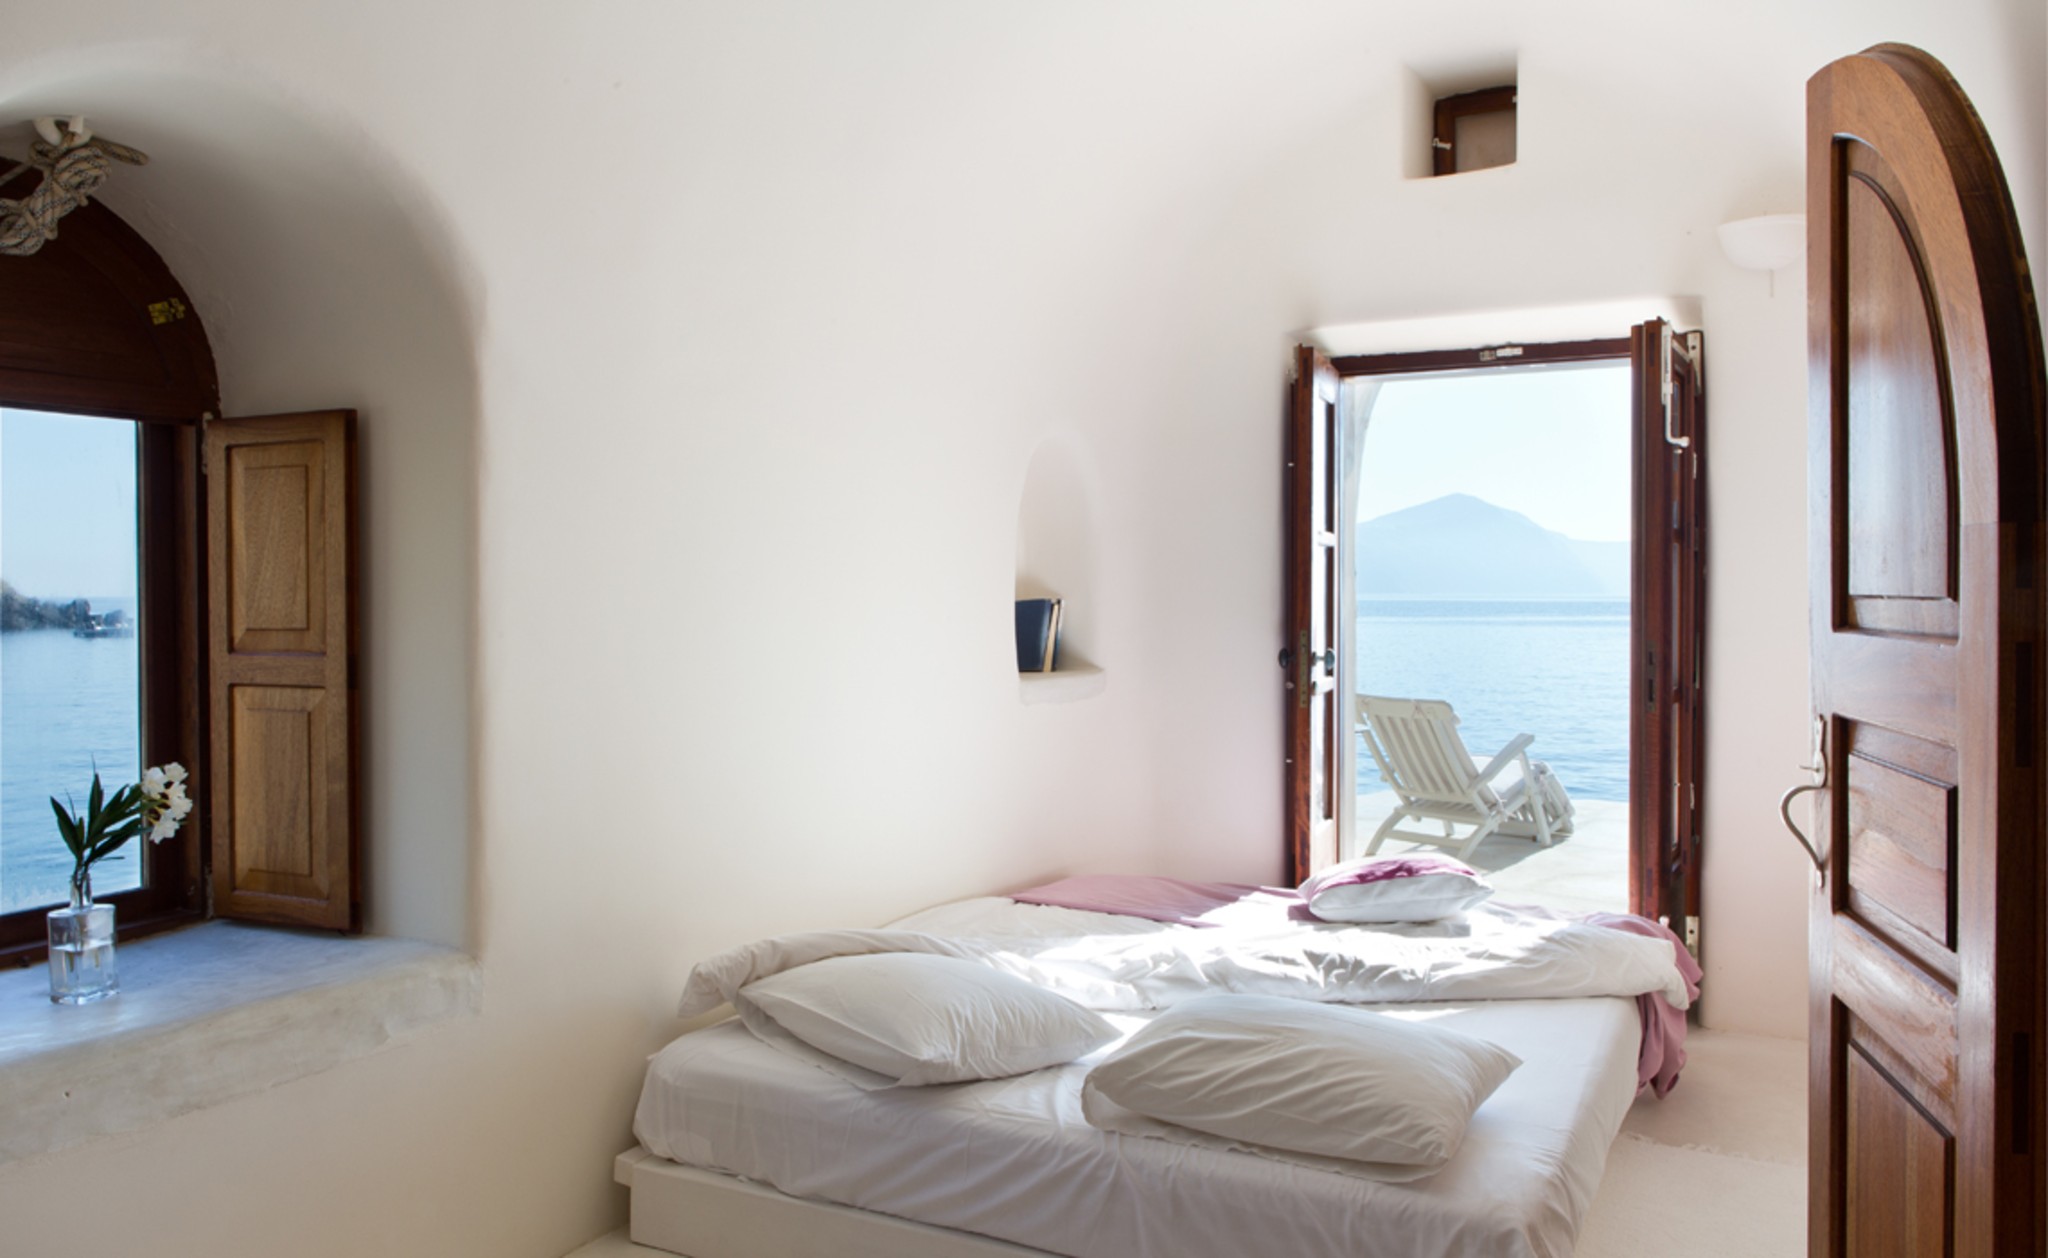 Santorini: um roteiro de viagem | Unibanco